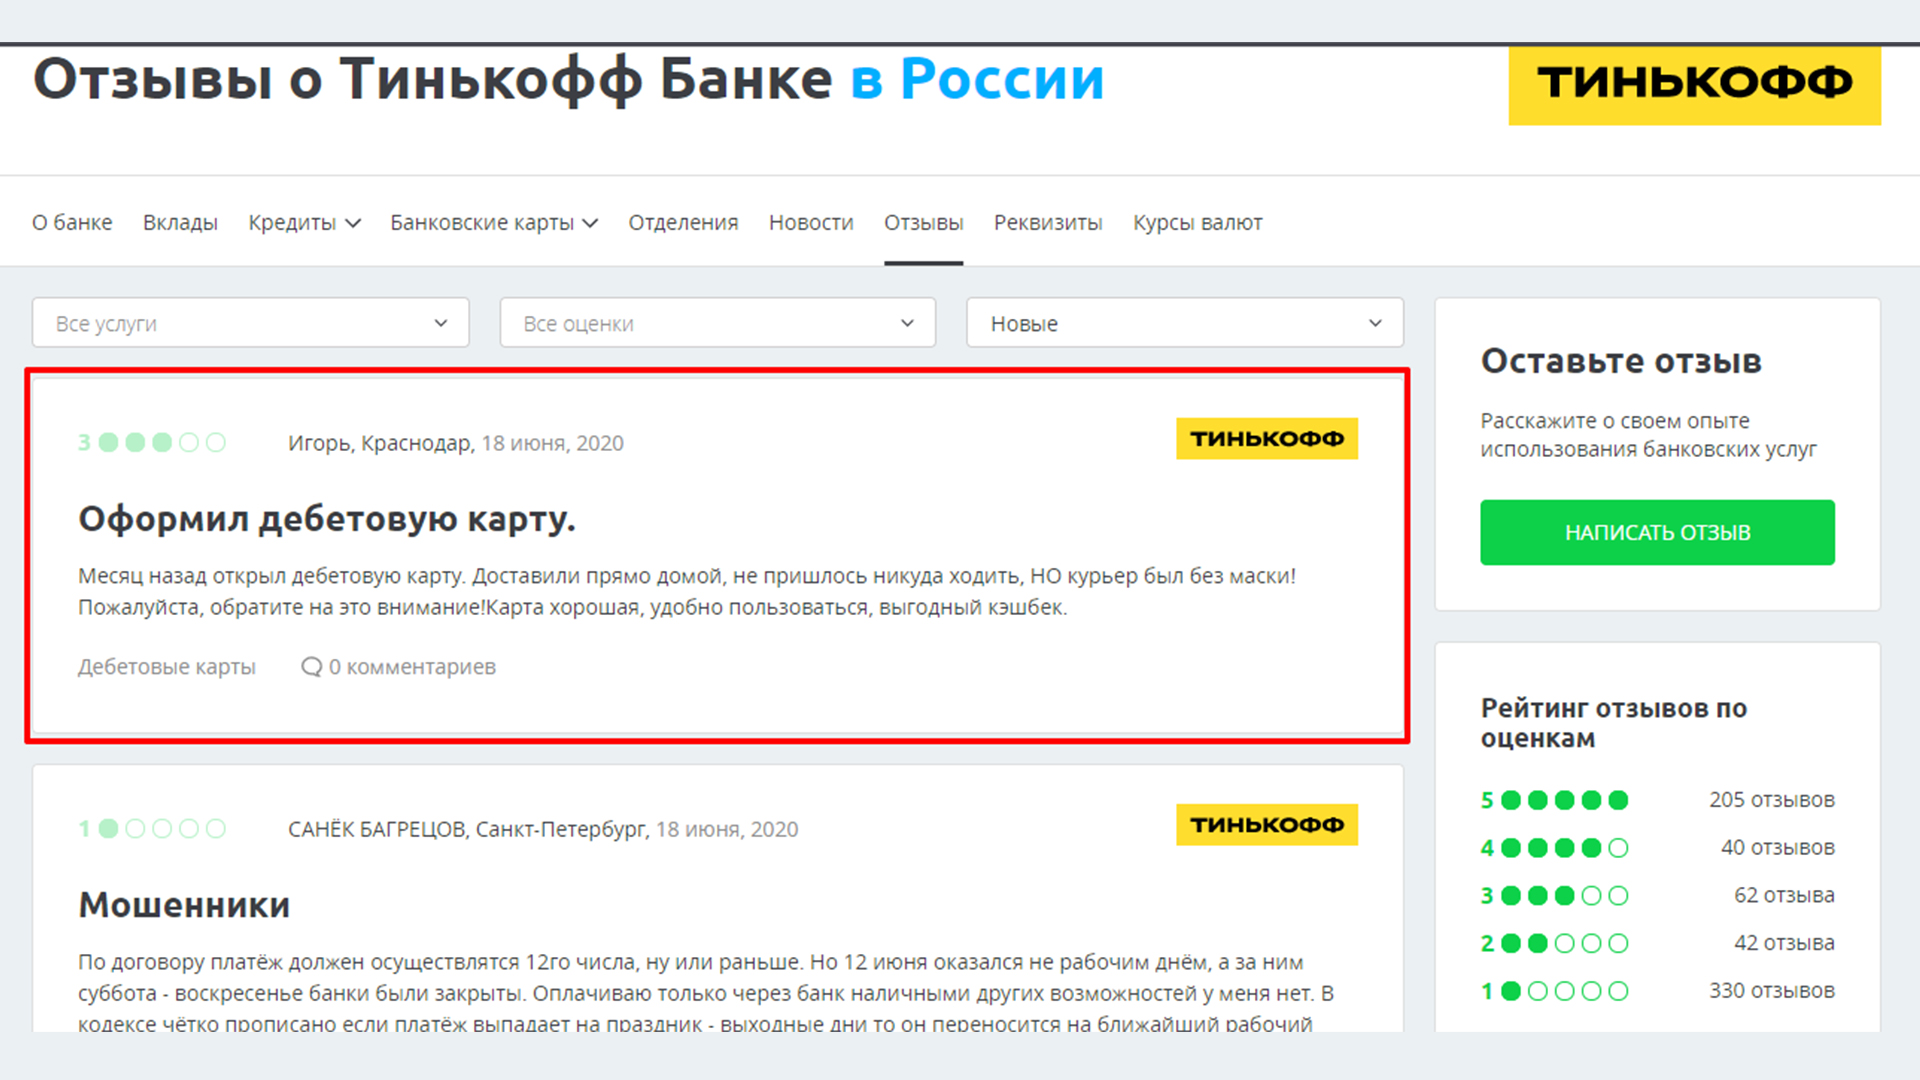 Отзыв оставленный на сайте Sravni.ru в ветке банка Тинькофф, остался не подтверждён.